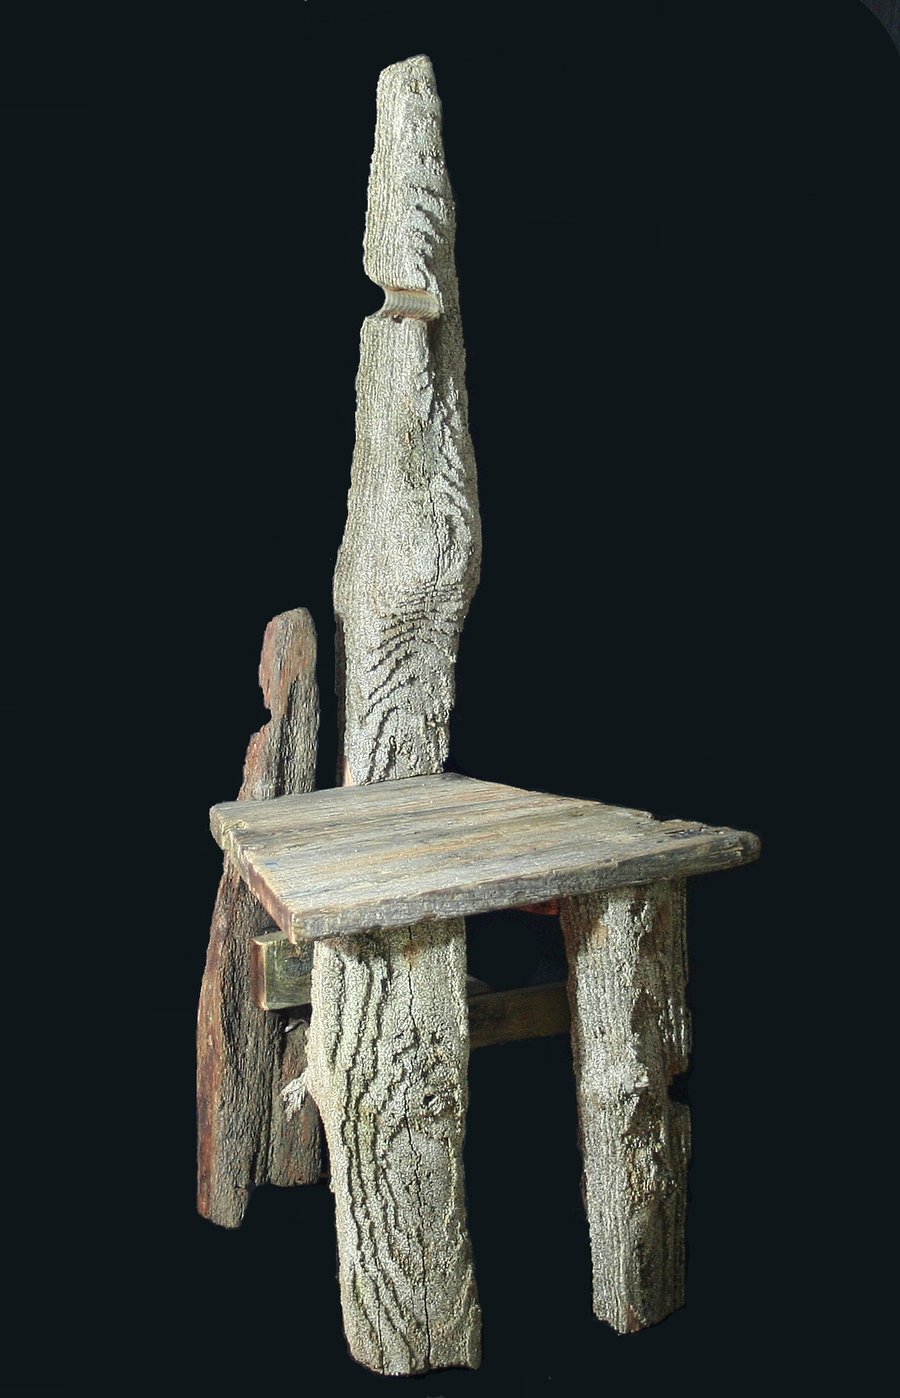 Driftwood Chair, Drift Wood,Unique Chair,Feature Chair,Garden seat Sculpture